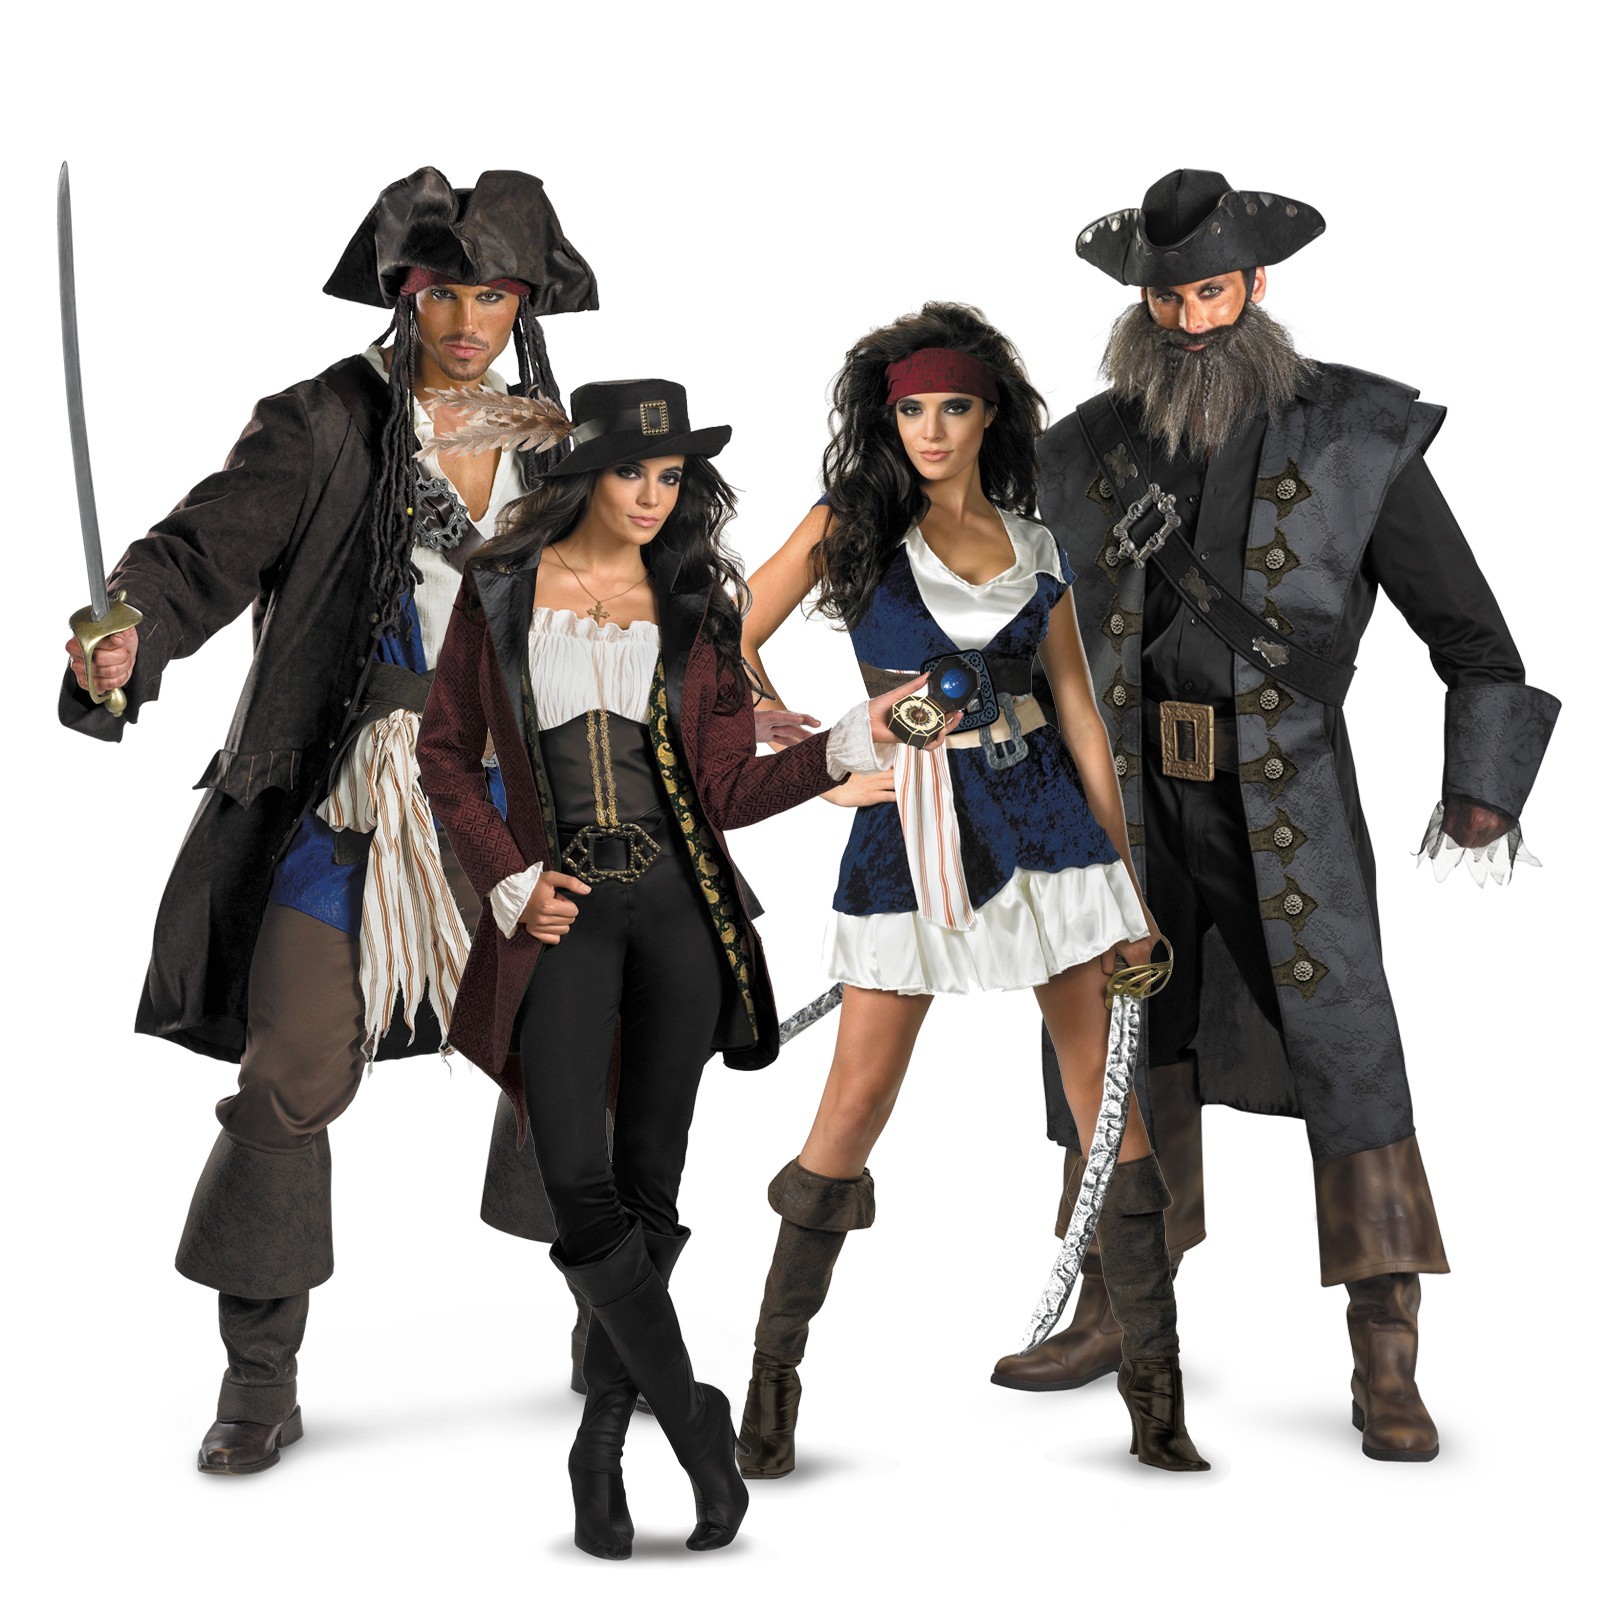 Лучшие идеи для пиратской вечеринки: костюмы, коктейлы, меню и декор